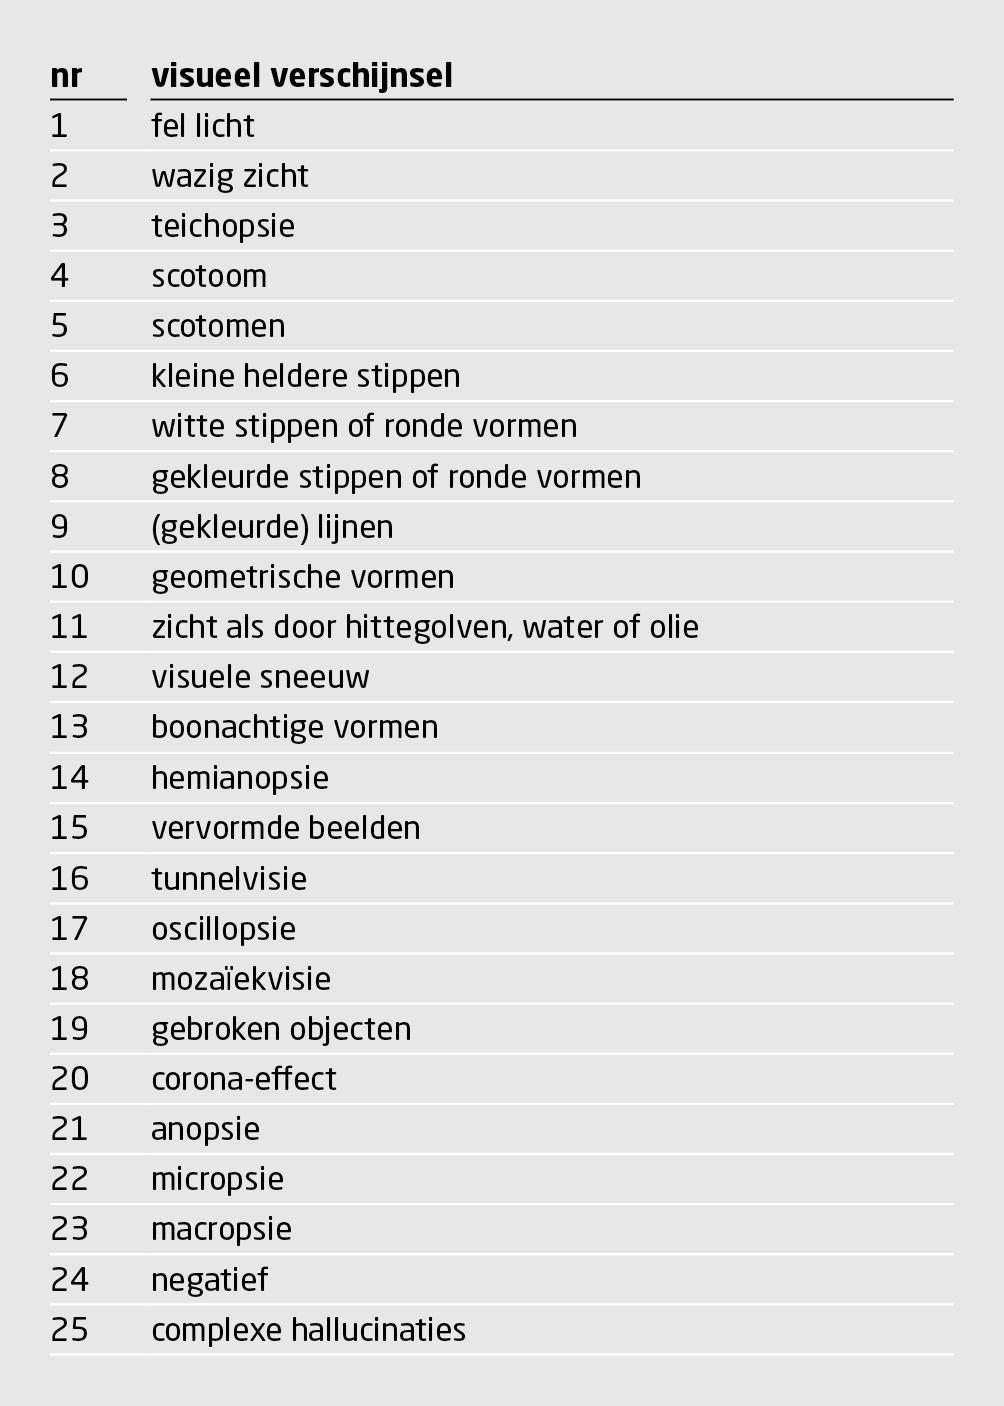 Tabel 2 | Lijst van 25 visuele verschijnselen bij een migraine-aura